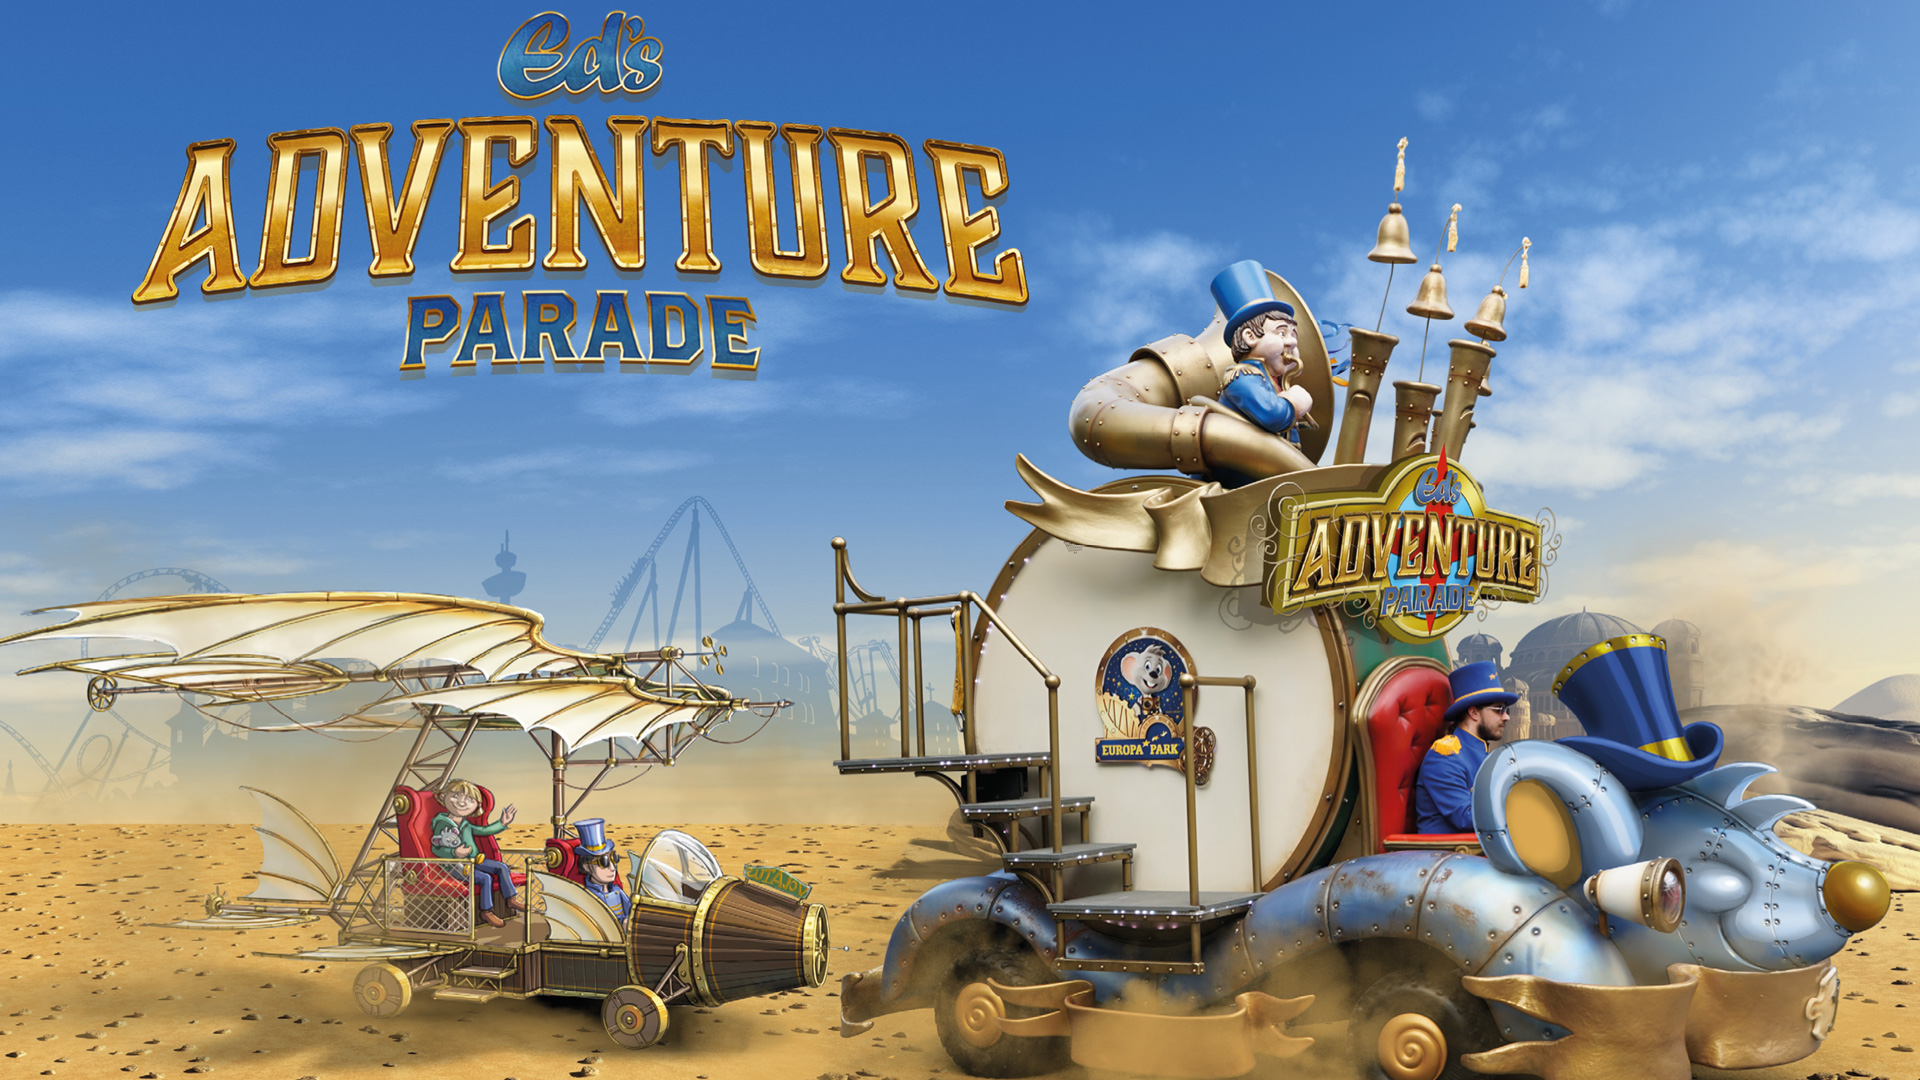 eds adventure parade 01